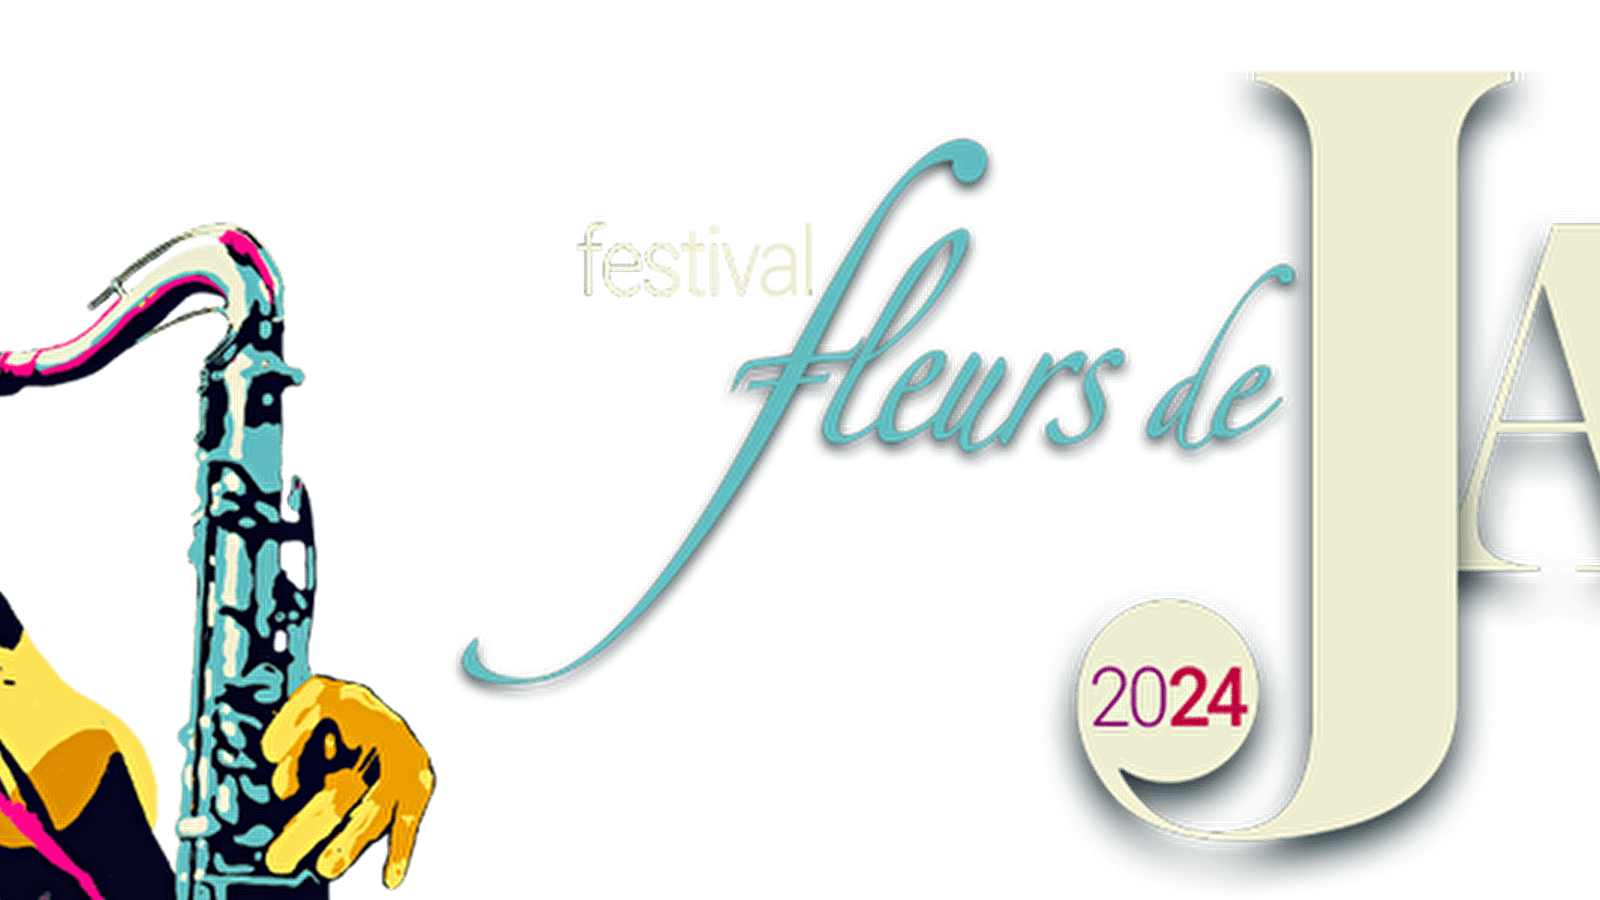 Fleurs de Jazz' Festival van 9 tot 11 mei 2024 - 11e editie